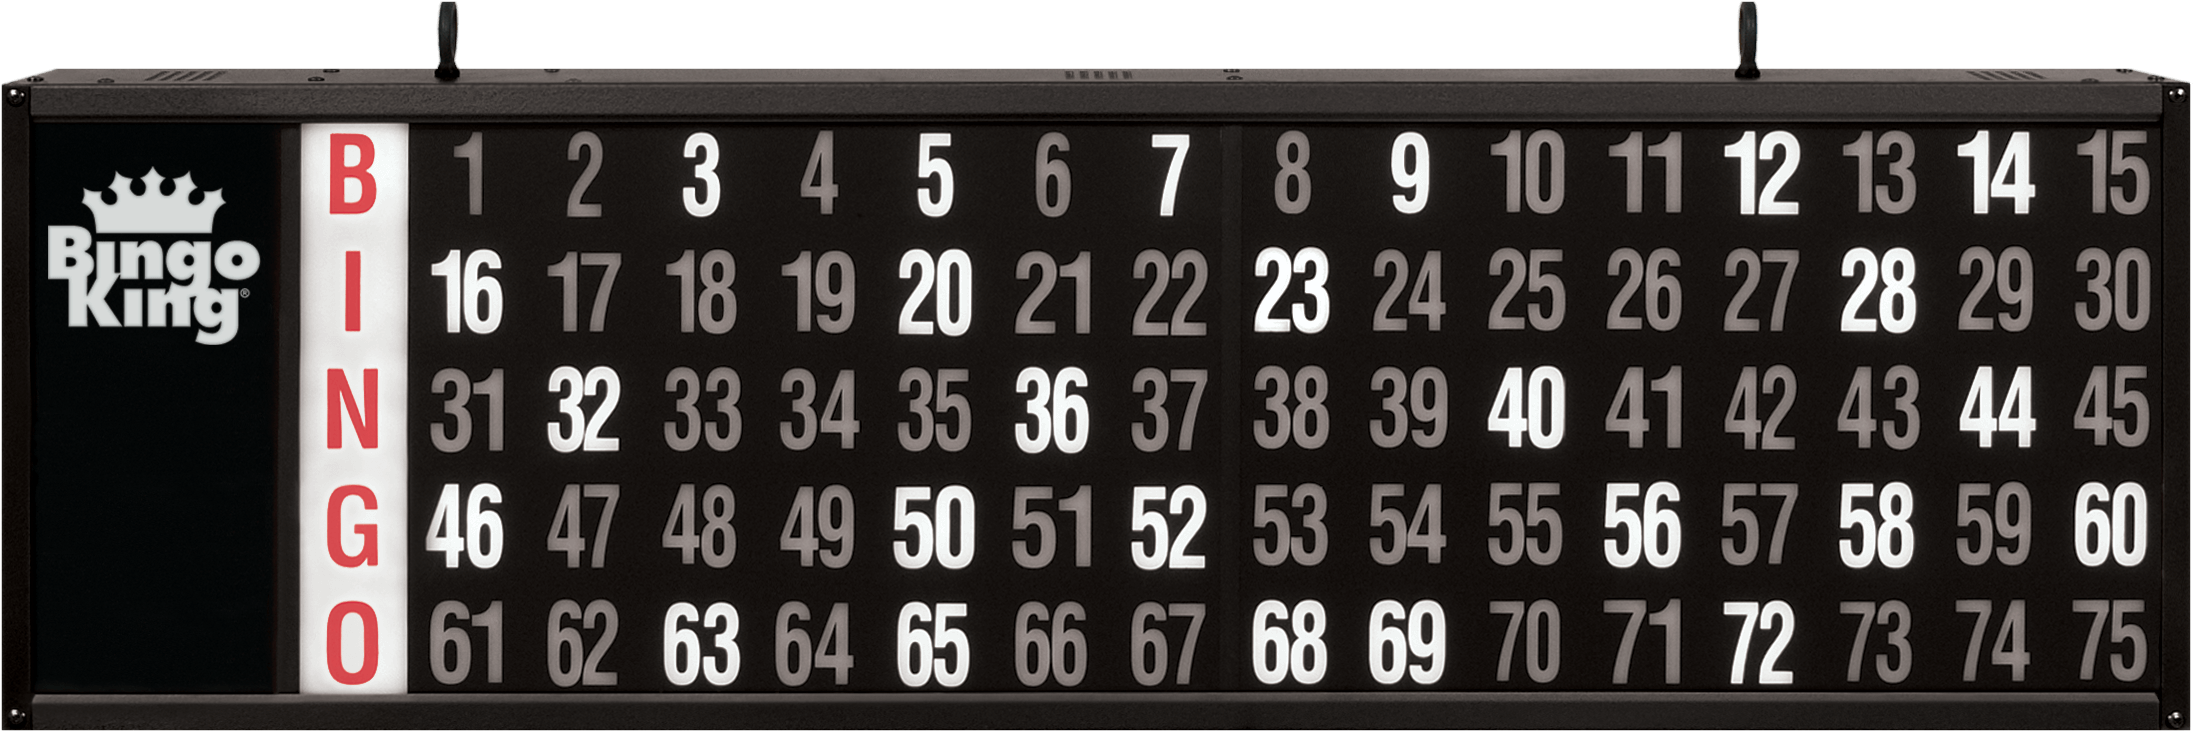 Numbers Only Bingo Flashboard